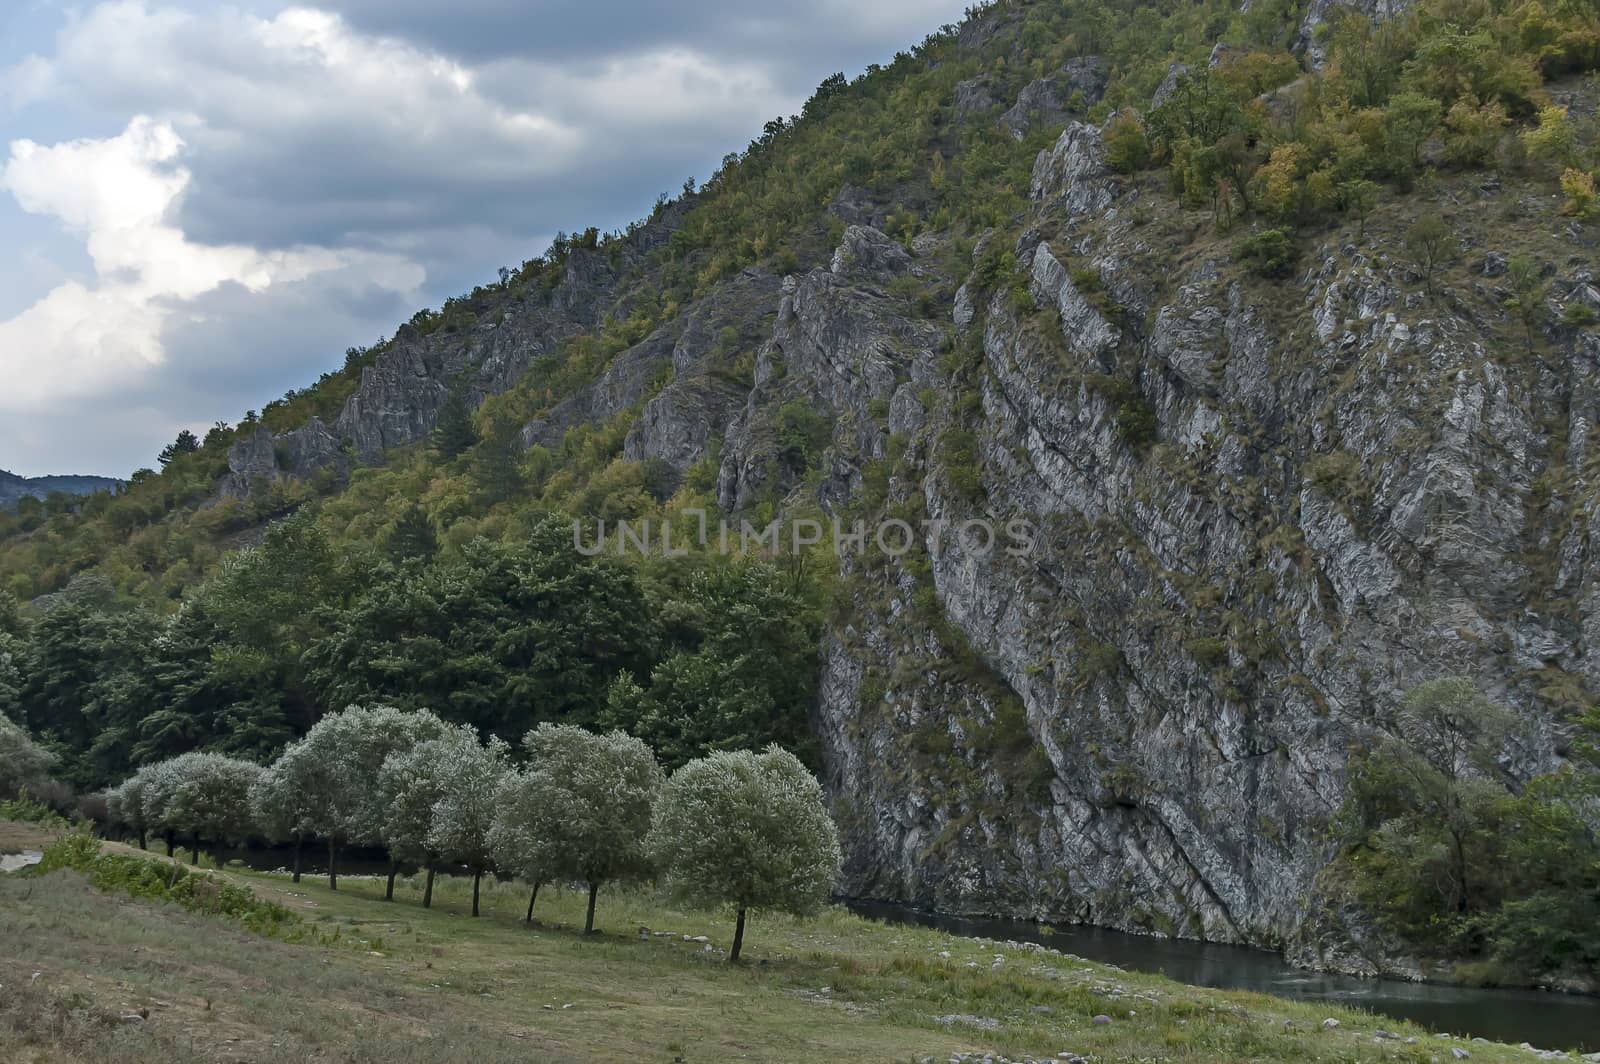 Part of the beautiful valley of Topolnitsa River through Sredna Gora Mountain, Bulgaria